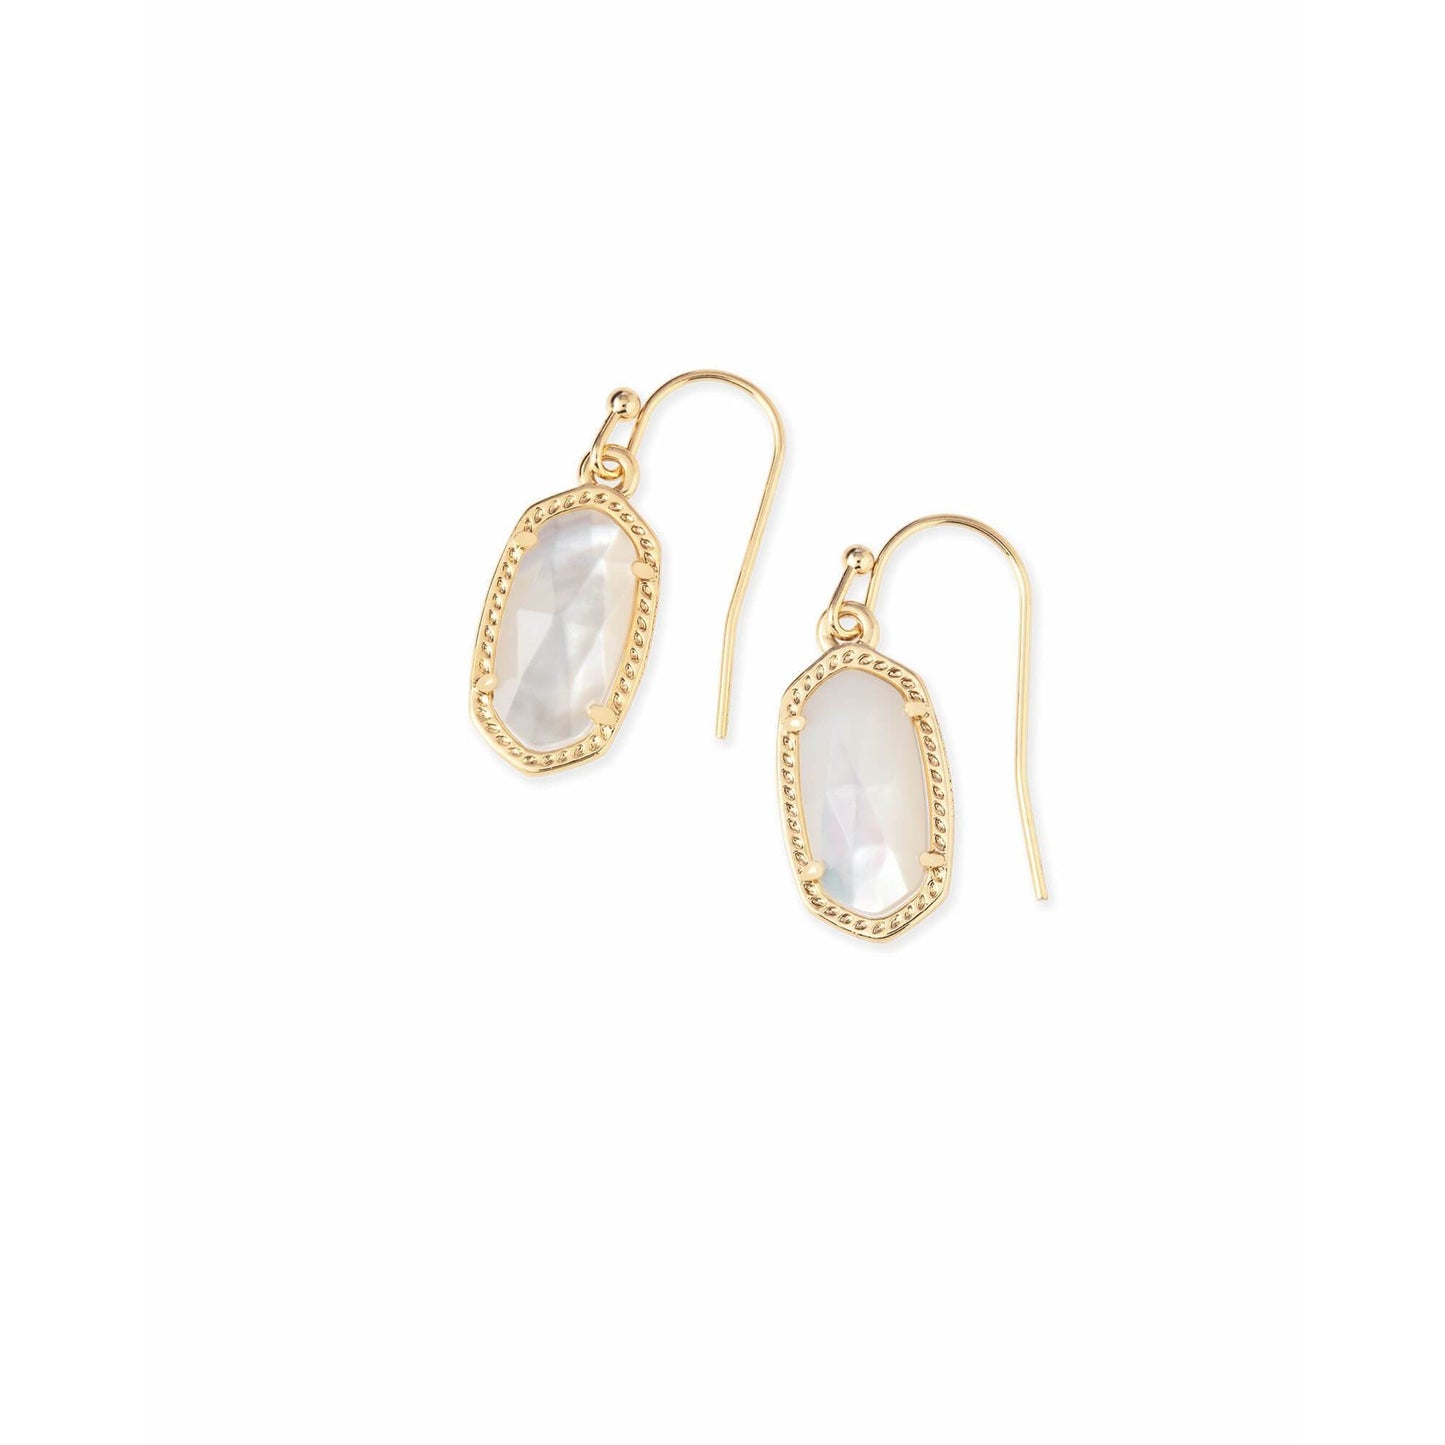 Kendra Scott - Lee Gold Drop Earrings in Ivory Pearl - Findlay Rowe Designs